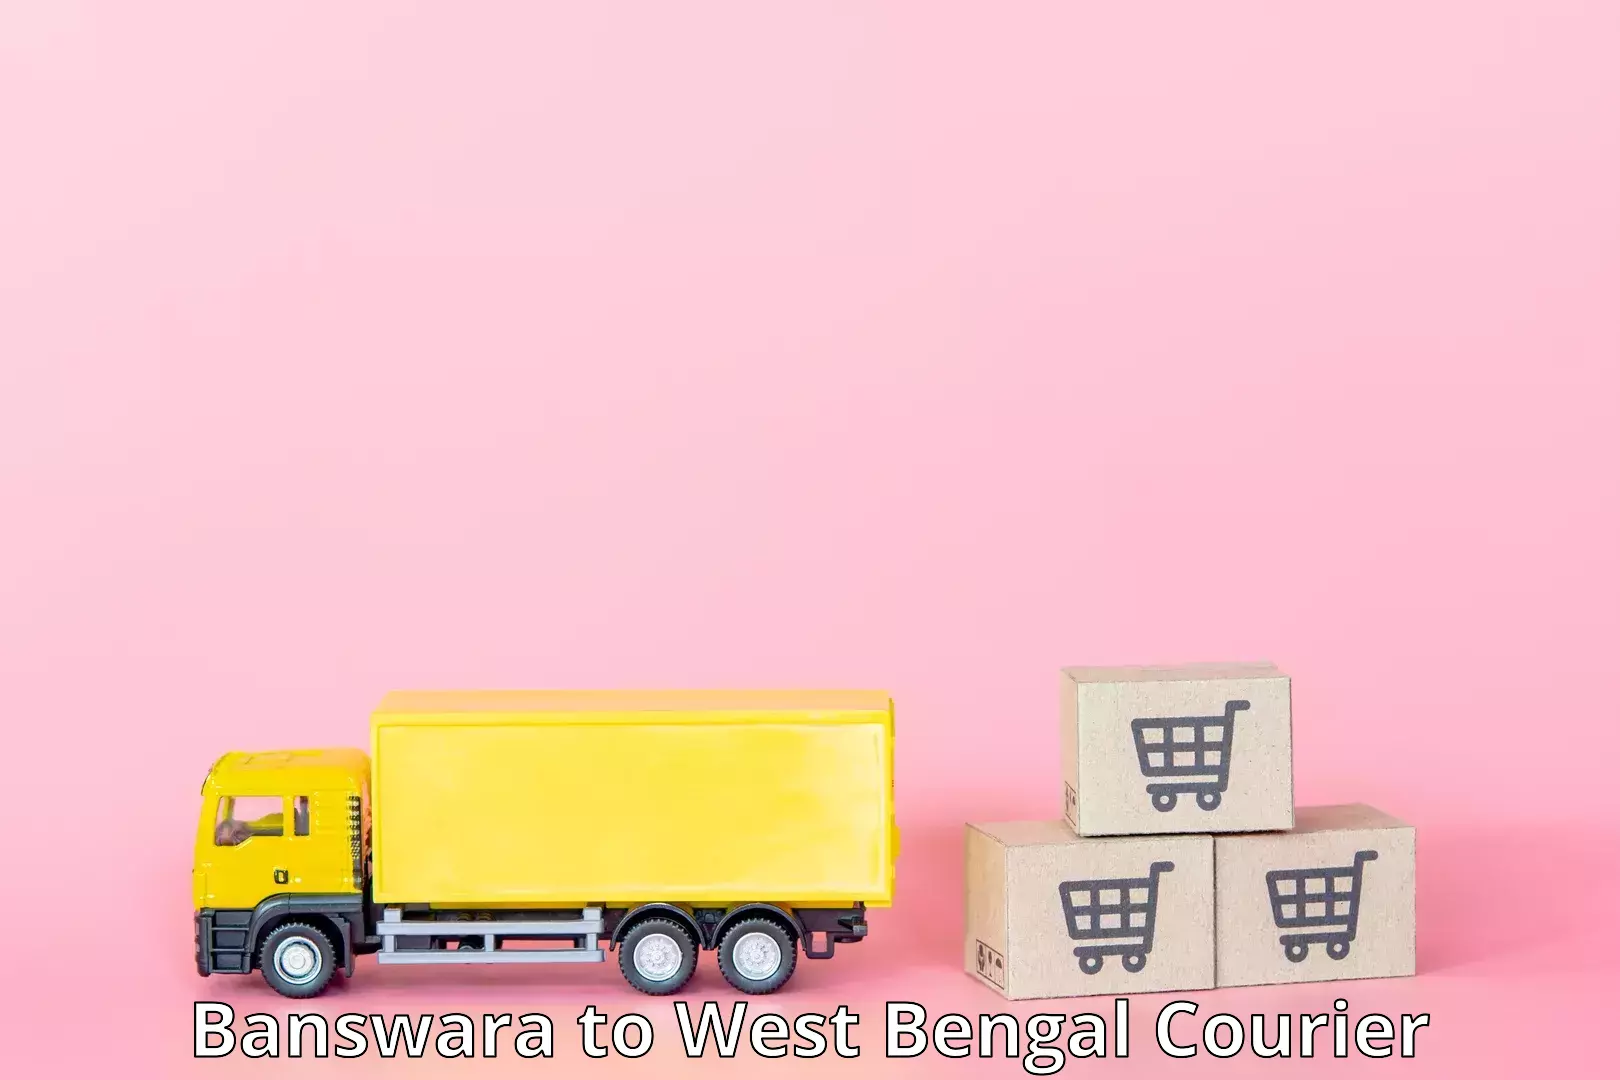 Customer-friendly courier services Banswara to Kolkata Port